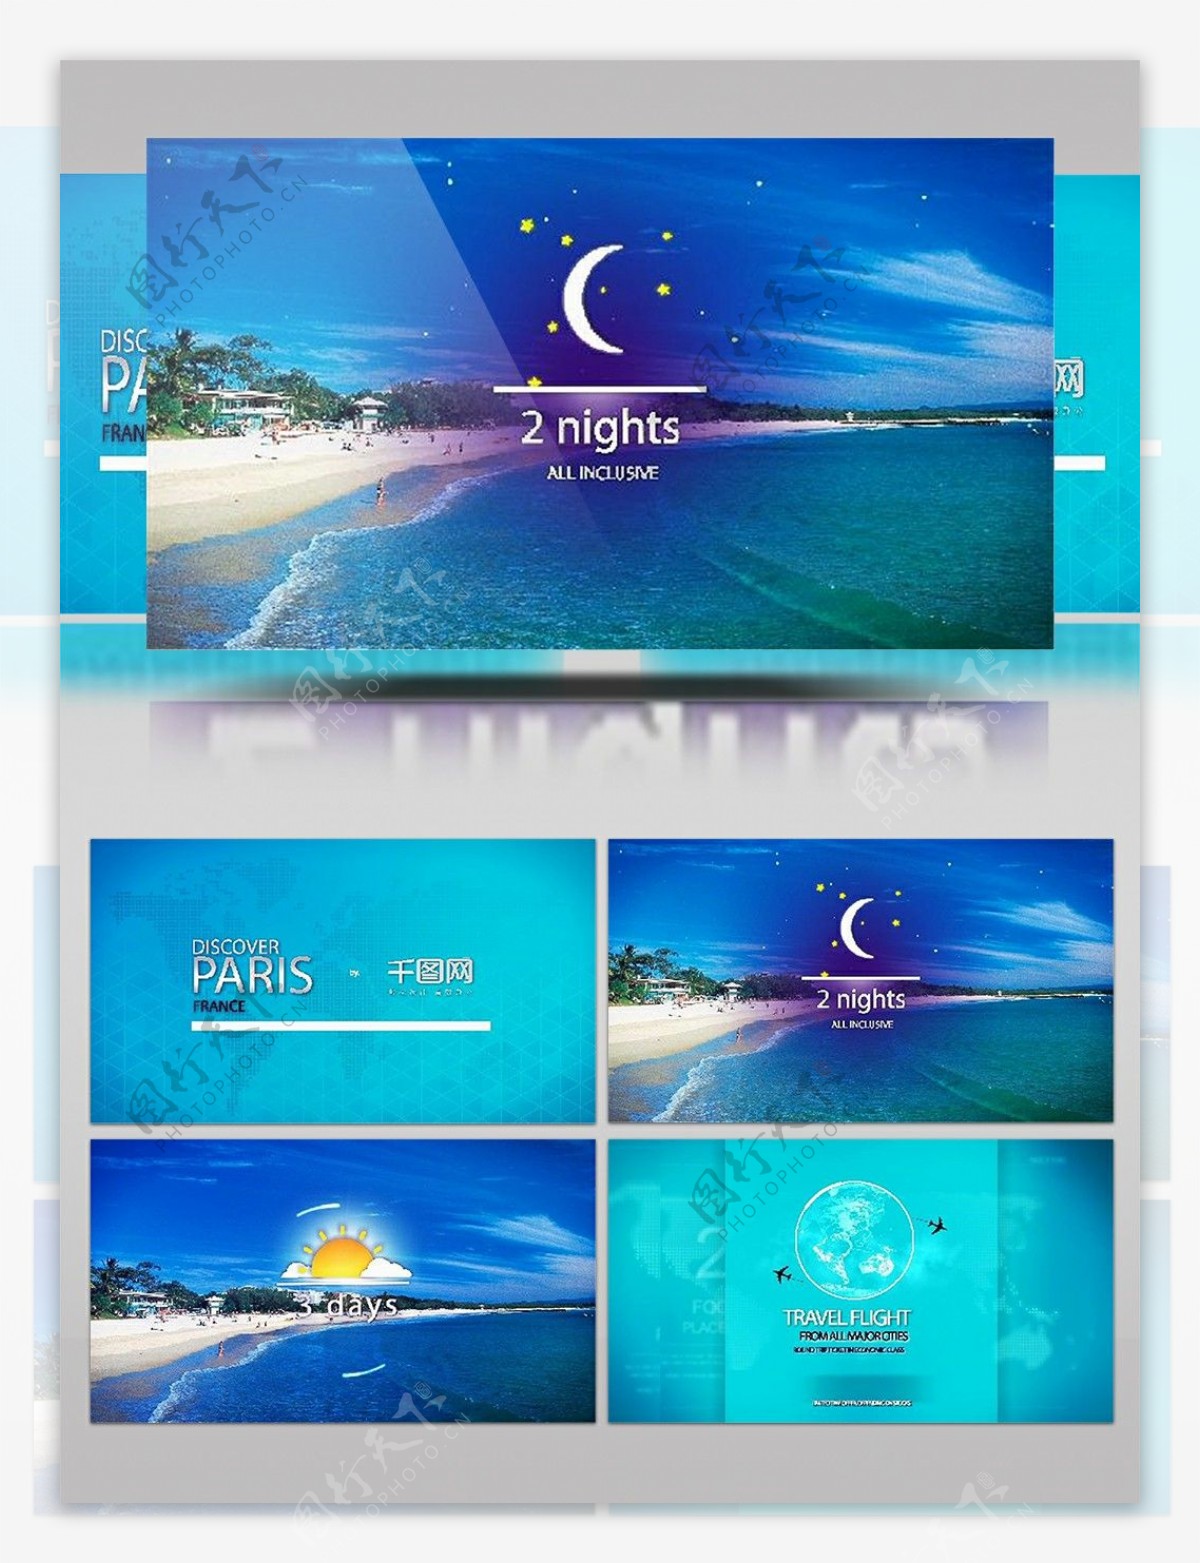 清凉浪漫夏日沙滩酒店促销推广包装ae模板